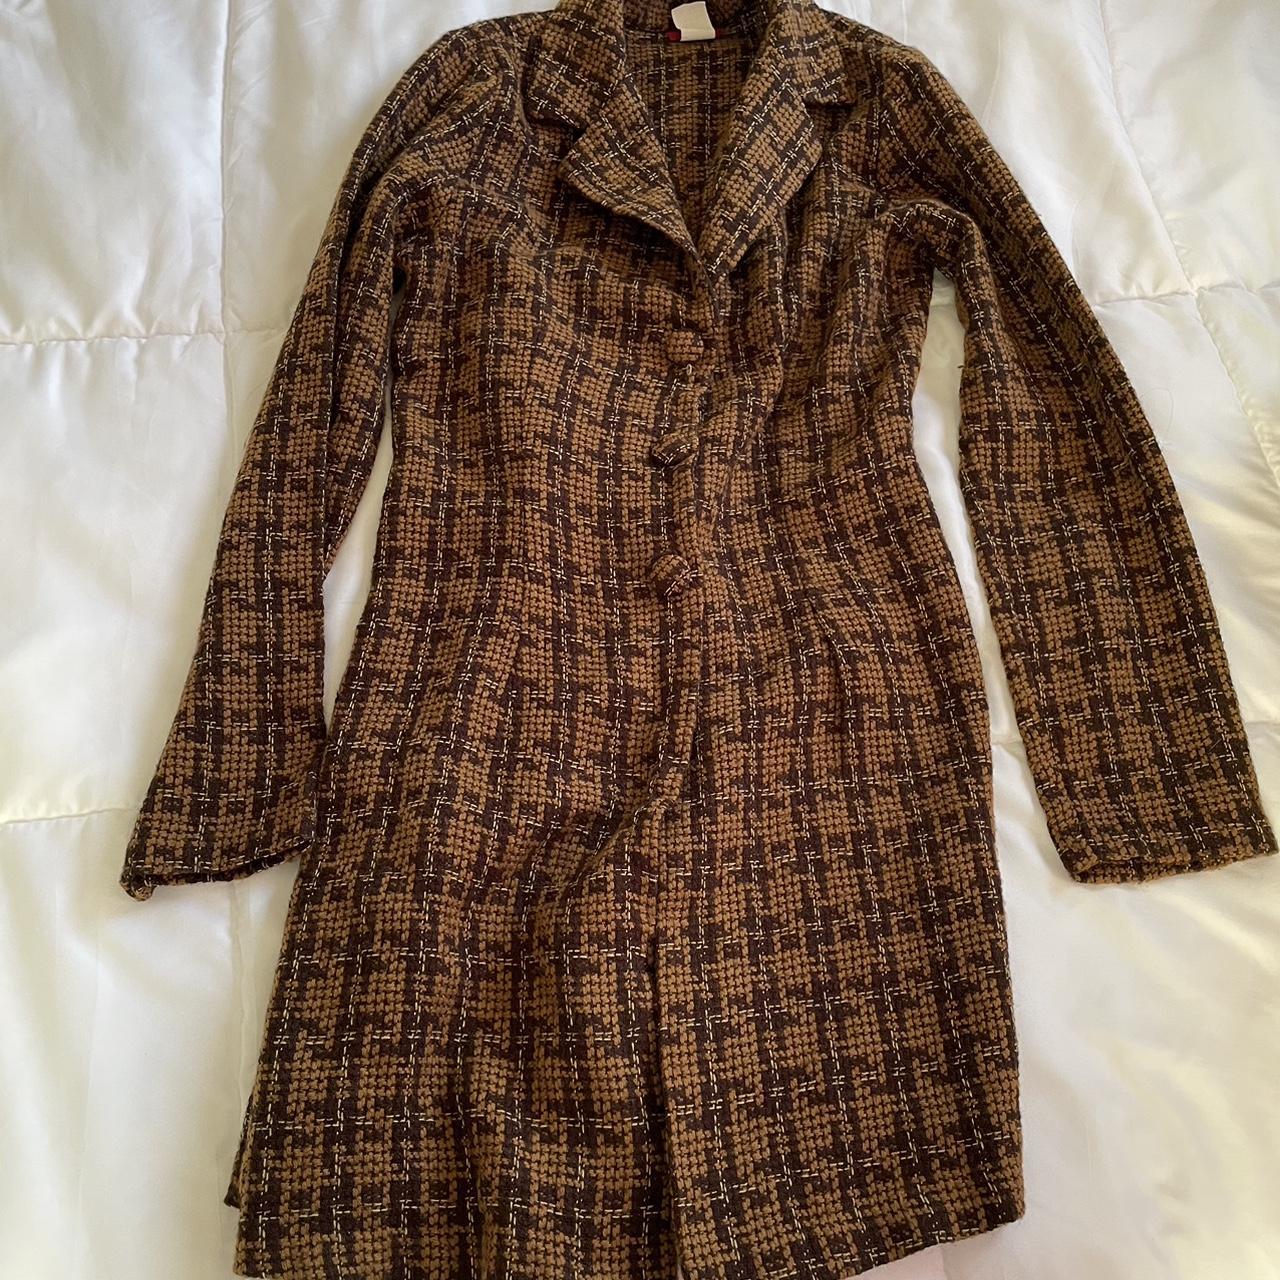 Vintage 70s brown coat - tag says medium Length:... - Depop